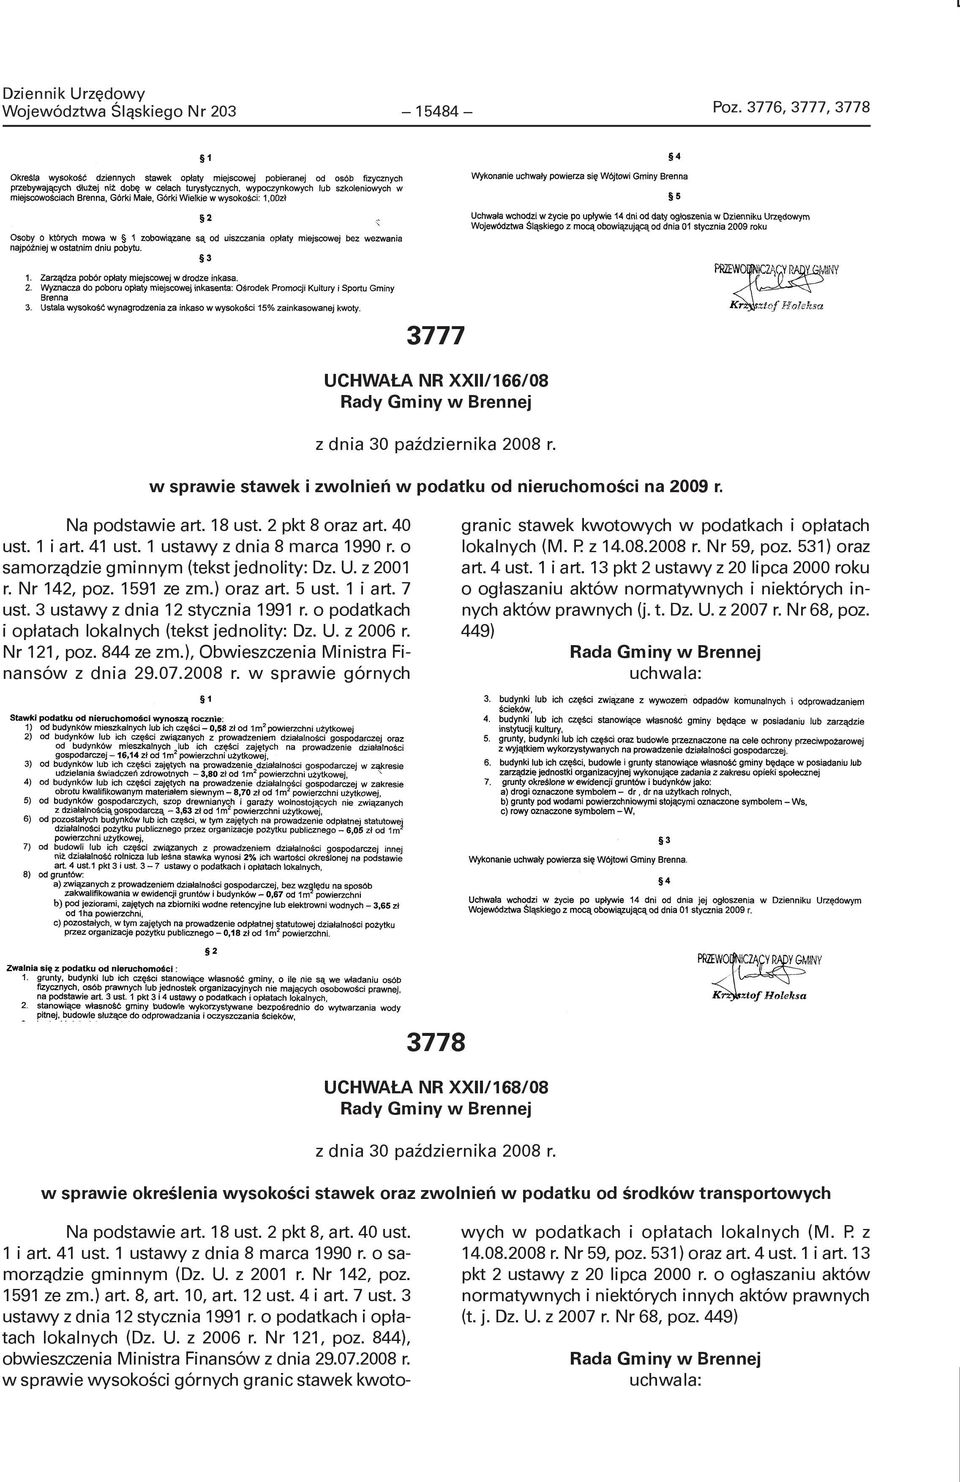 3 ustawy z dnia 12 stycznia 1991 r. o podatkach i opłatach lokalnych (tekst jednolity: Dz. U. z 2006 r. Nr 121, poz. 844 ze zm.), Obwieszczenia Ministra Finansów z dnia 29.07.2008 r.